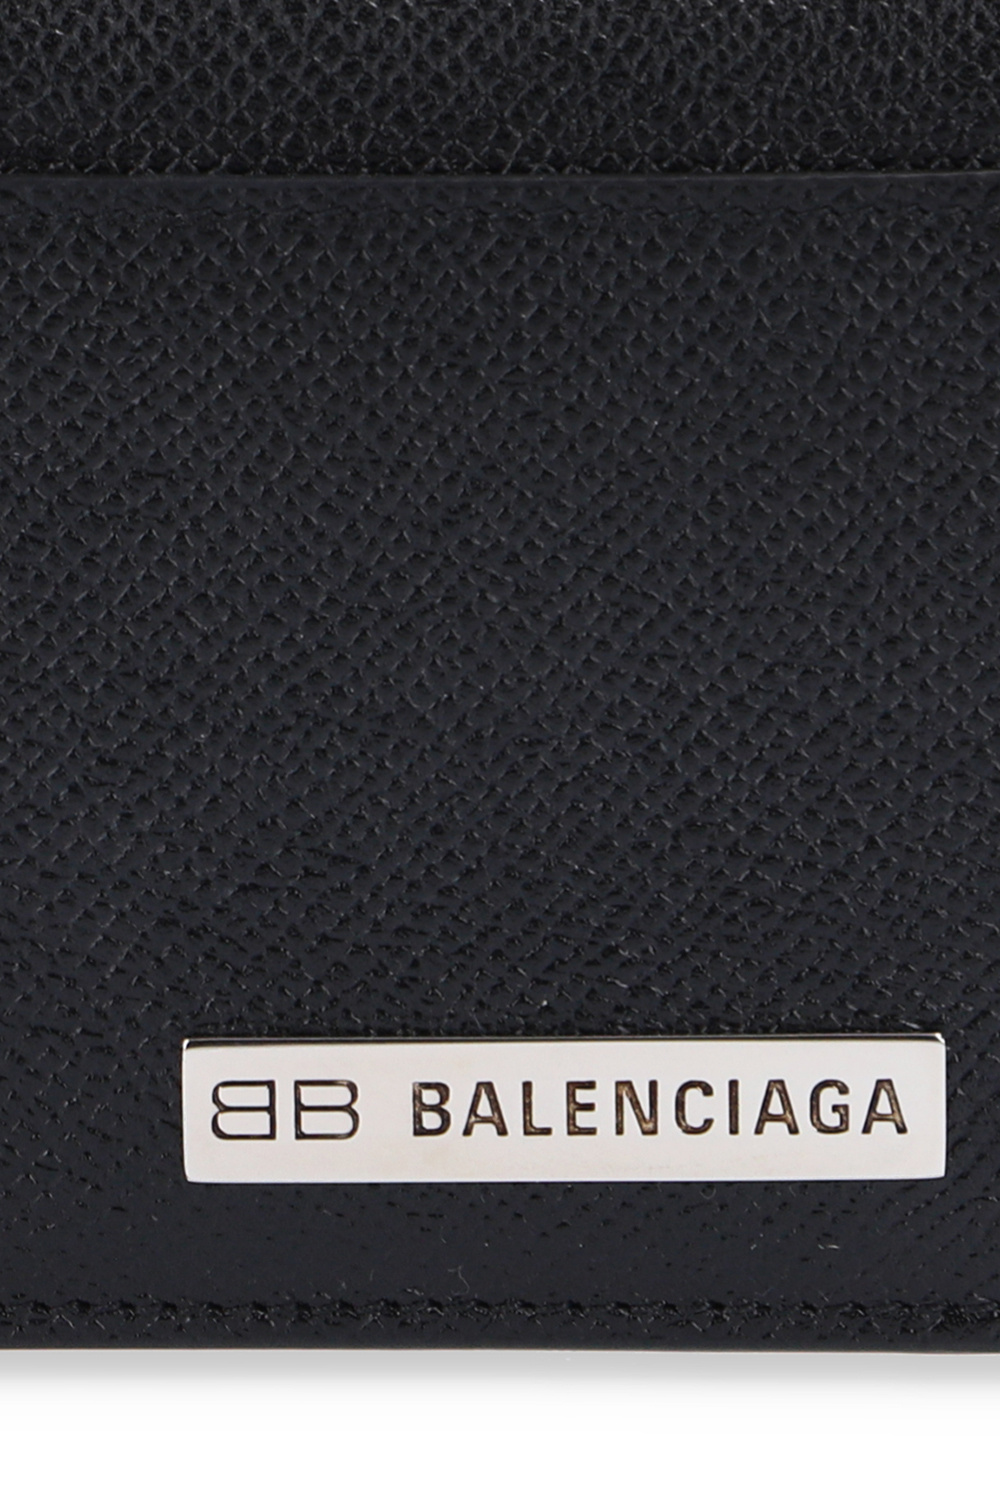 Balenciaga Baby 0-36 months